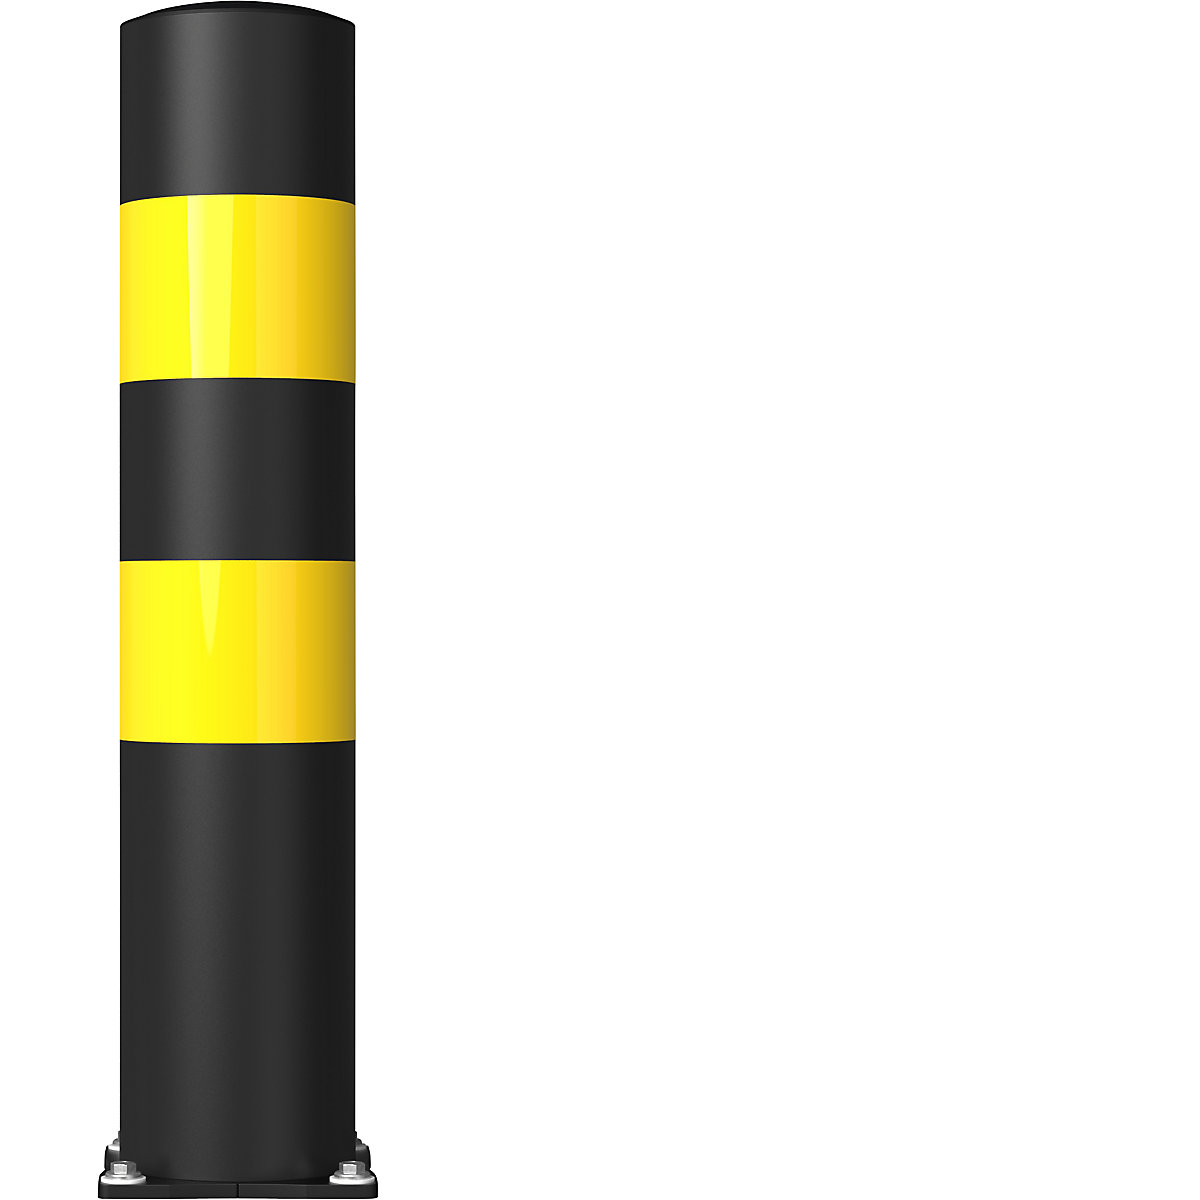 Ochranný protinárazový sloupek FLEX IMPACT, Ø 200 mm, výška 1000 mm, černá, 2 reflexní pruhy, pozinkovaná spodní deska